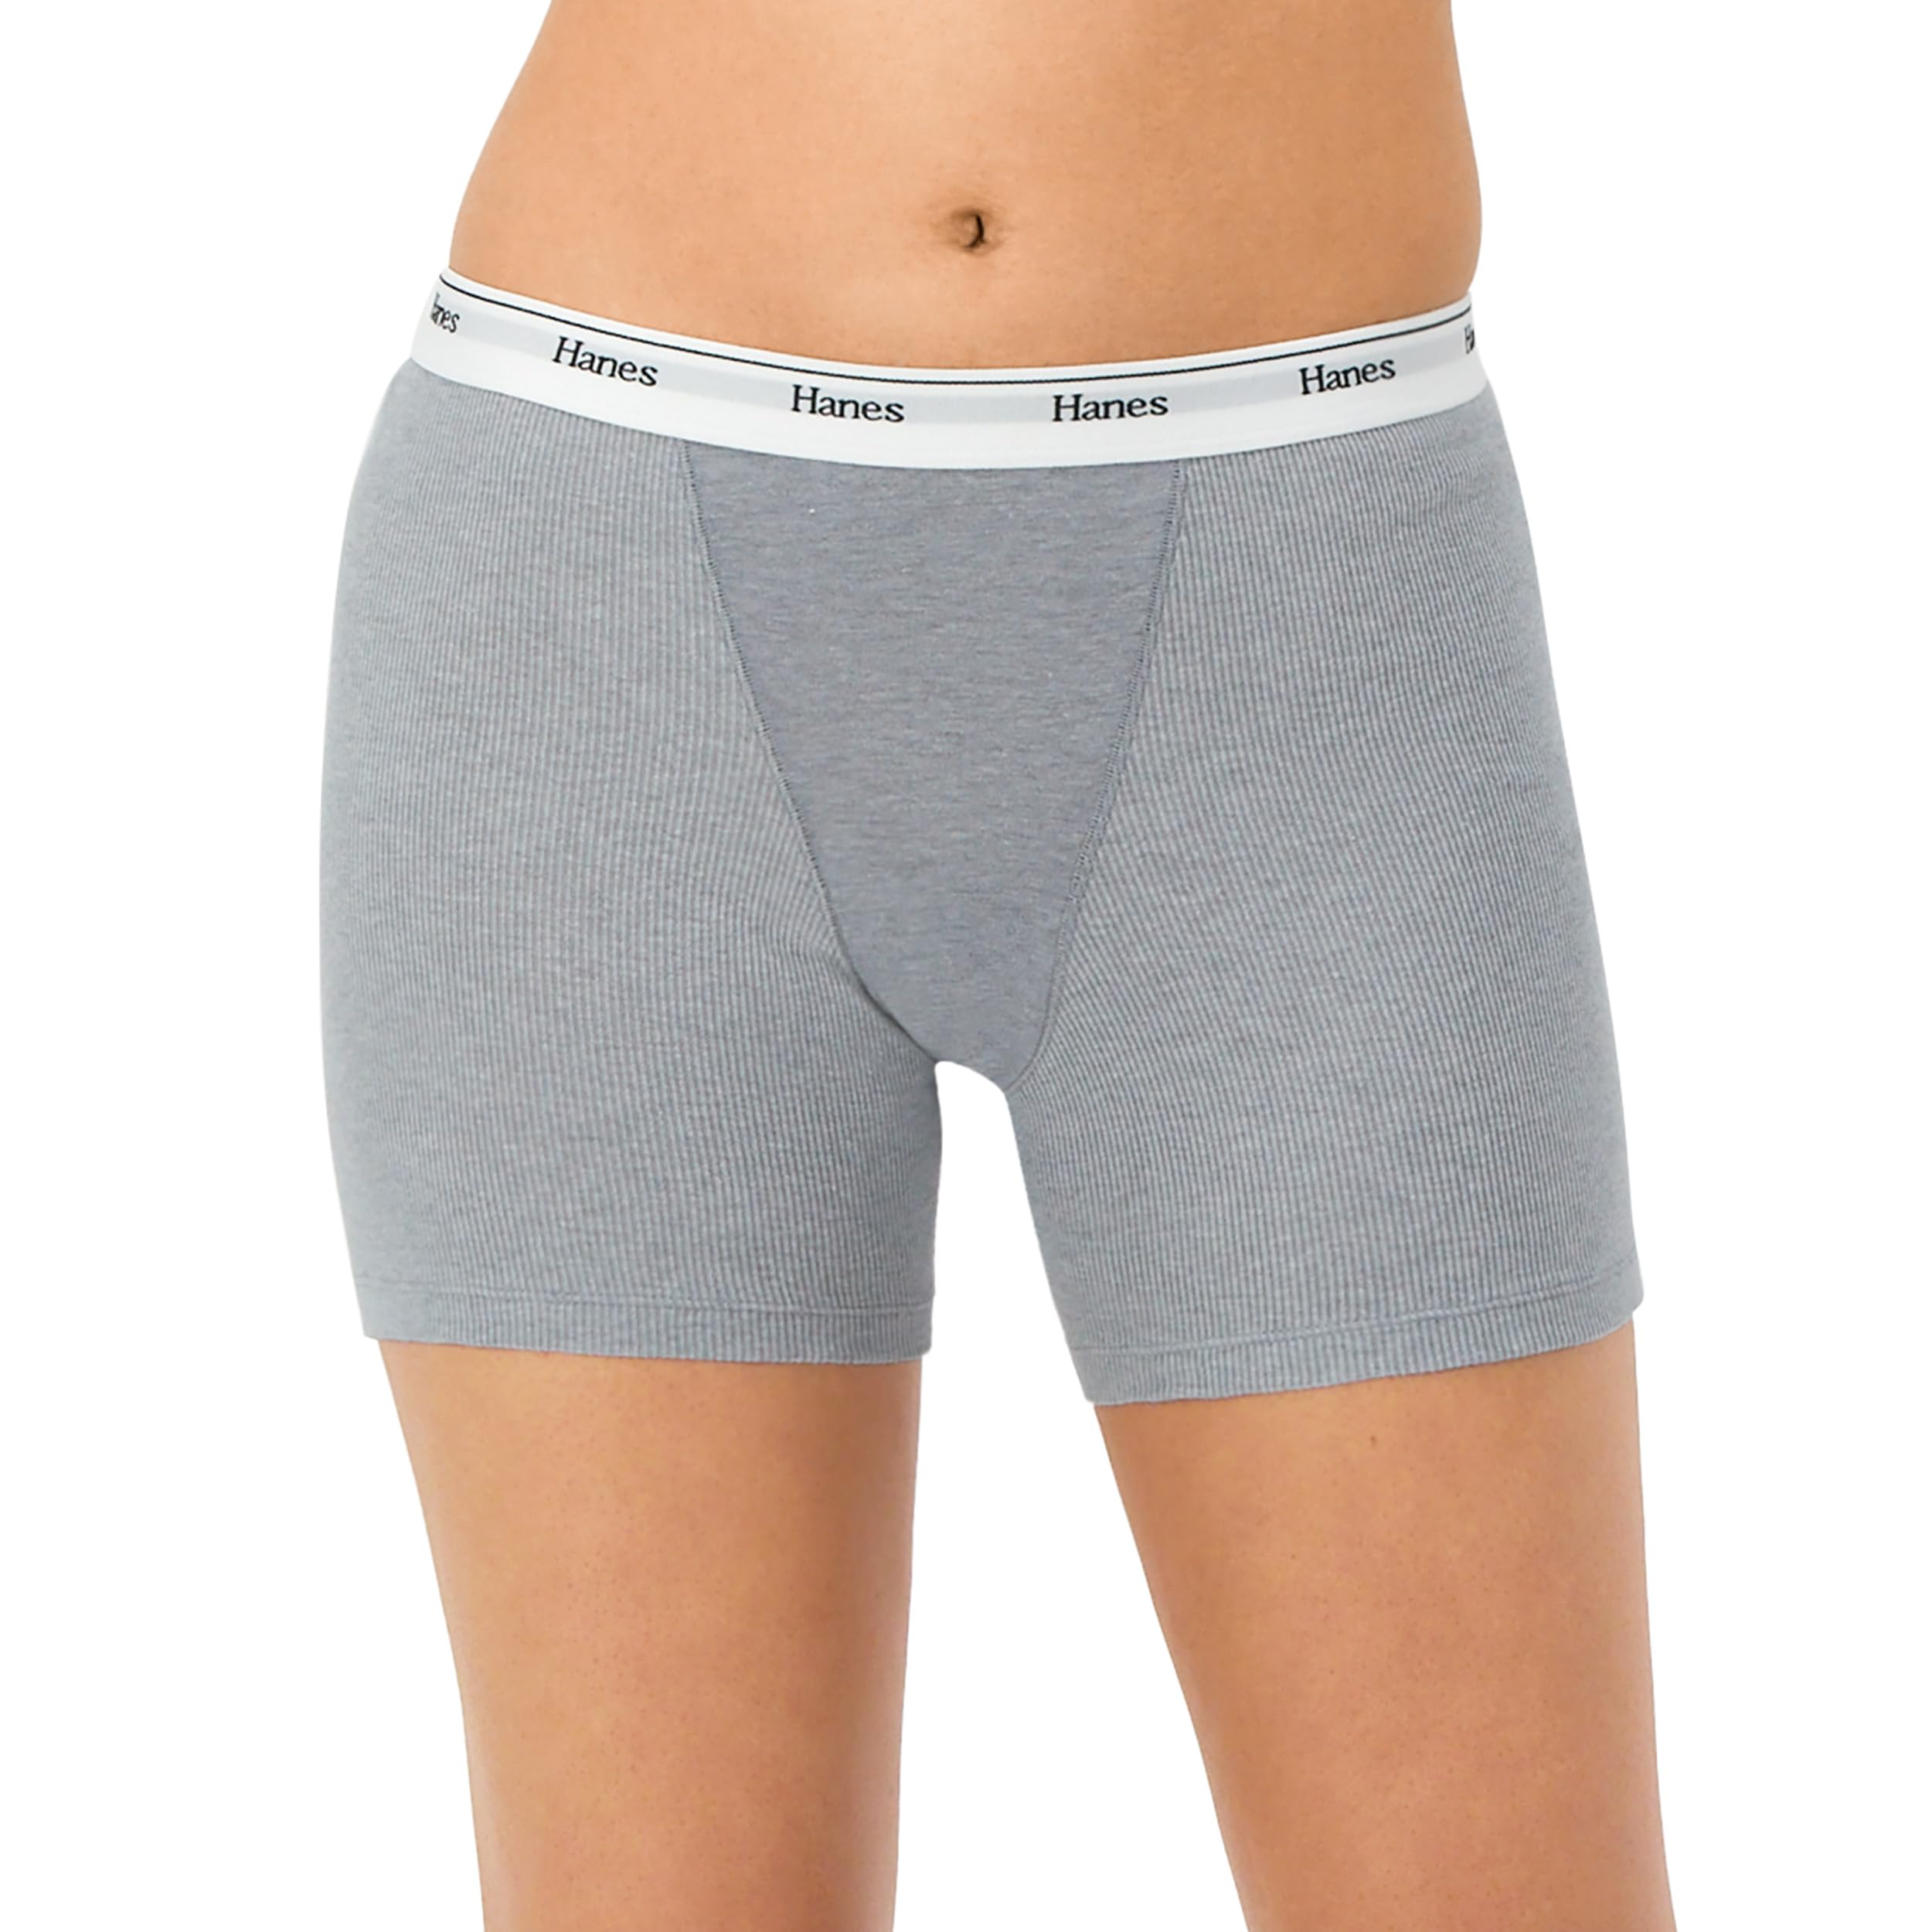 Hanes Women's Mid-Thigh Boxer Brief Pack, Stretch Cotton Underwear, 4-Pack